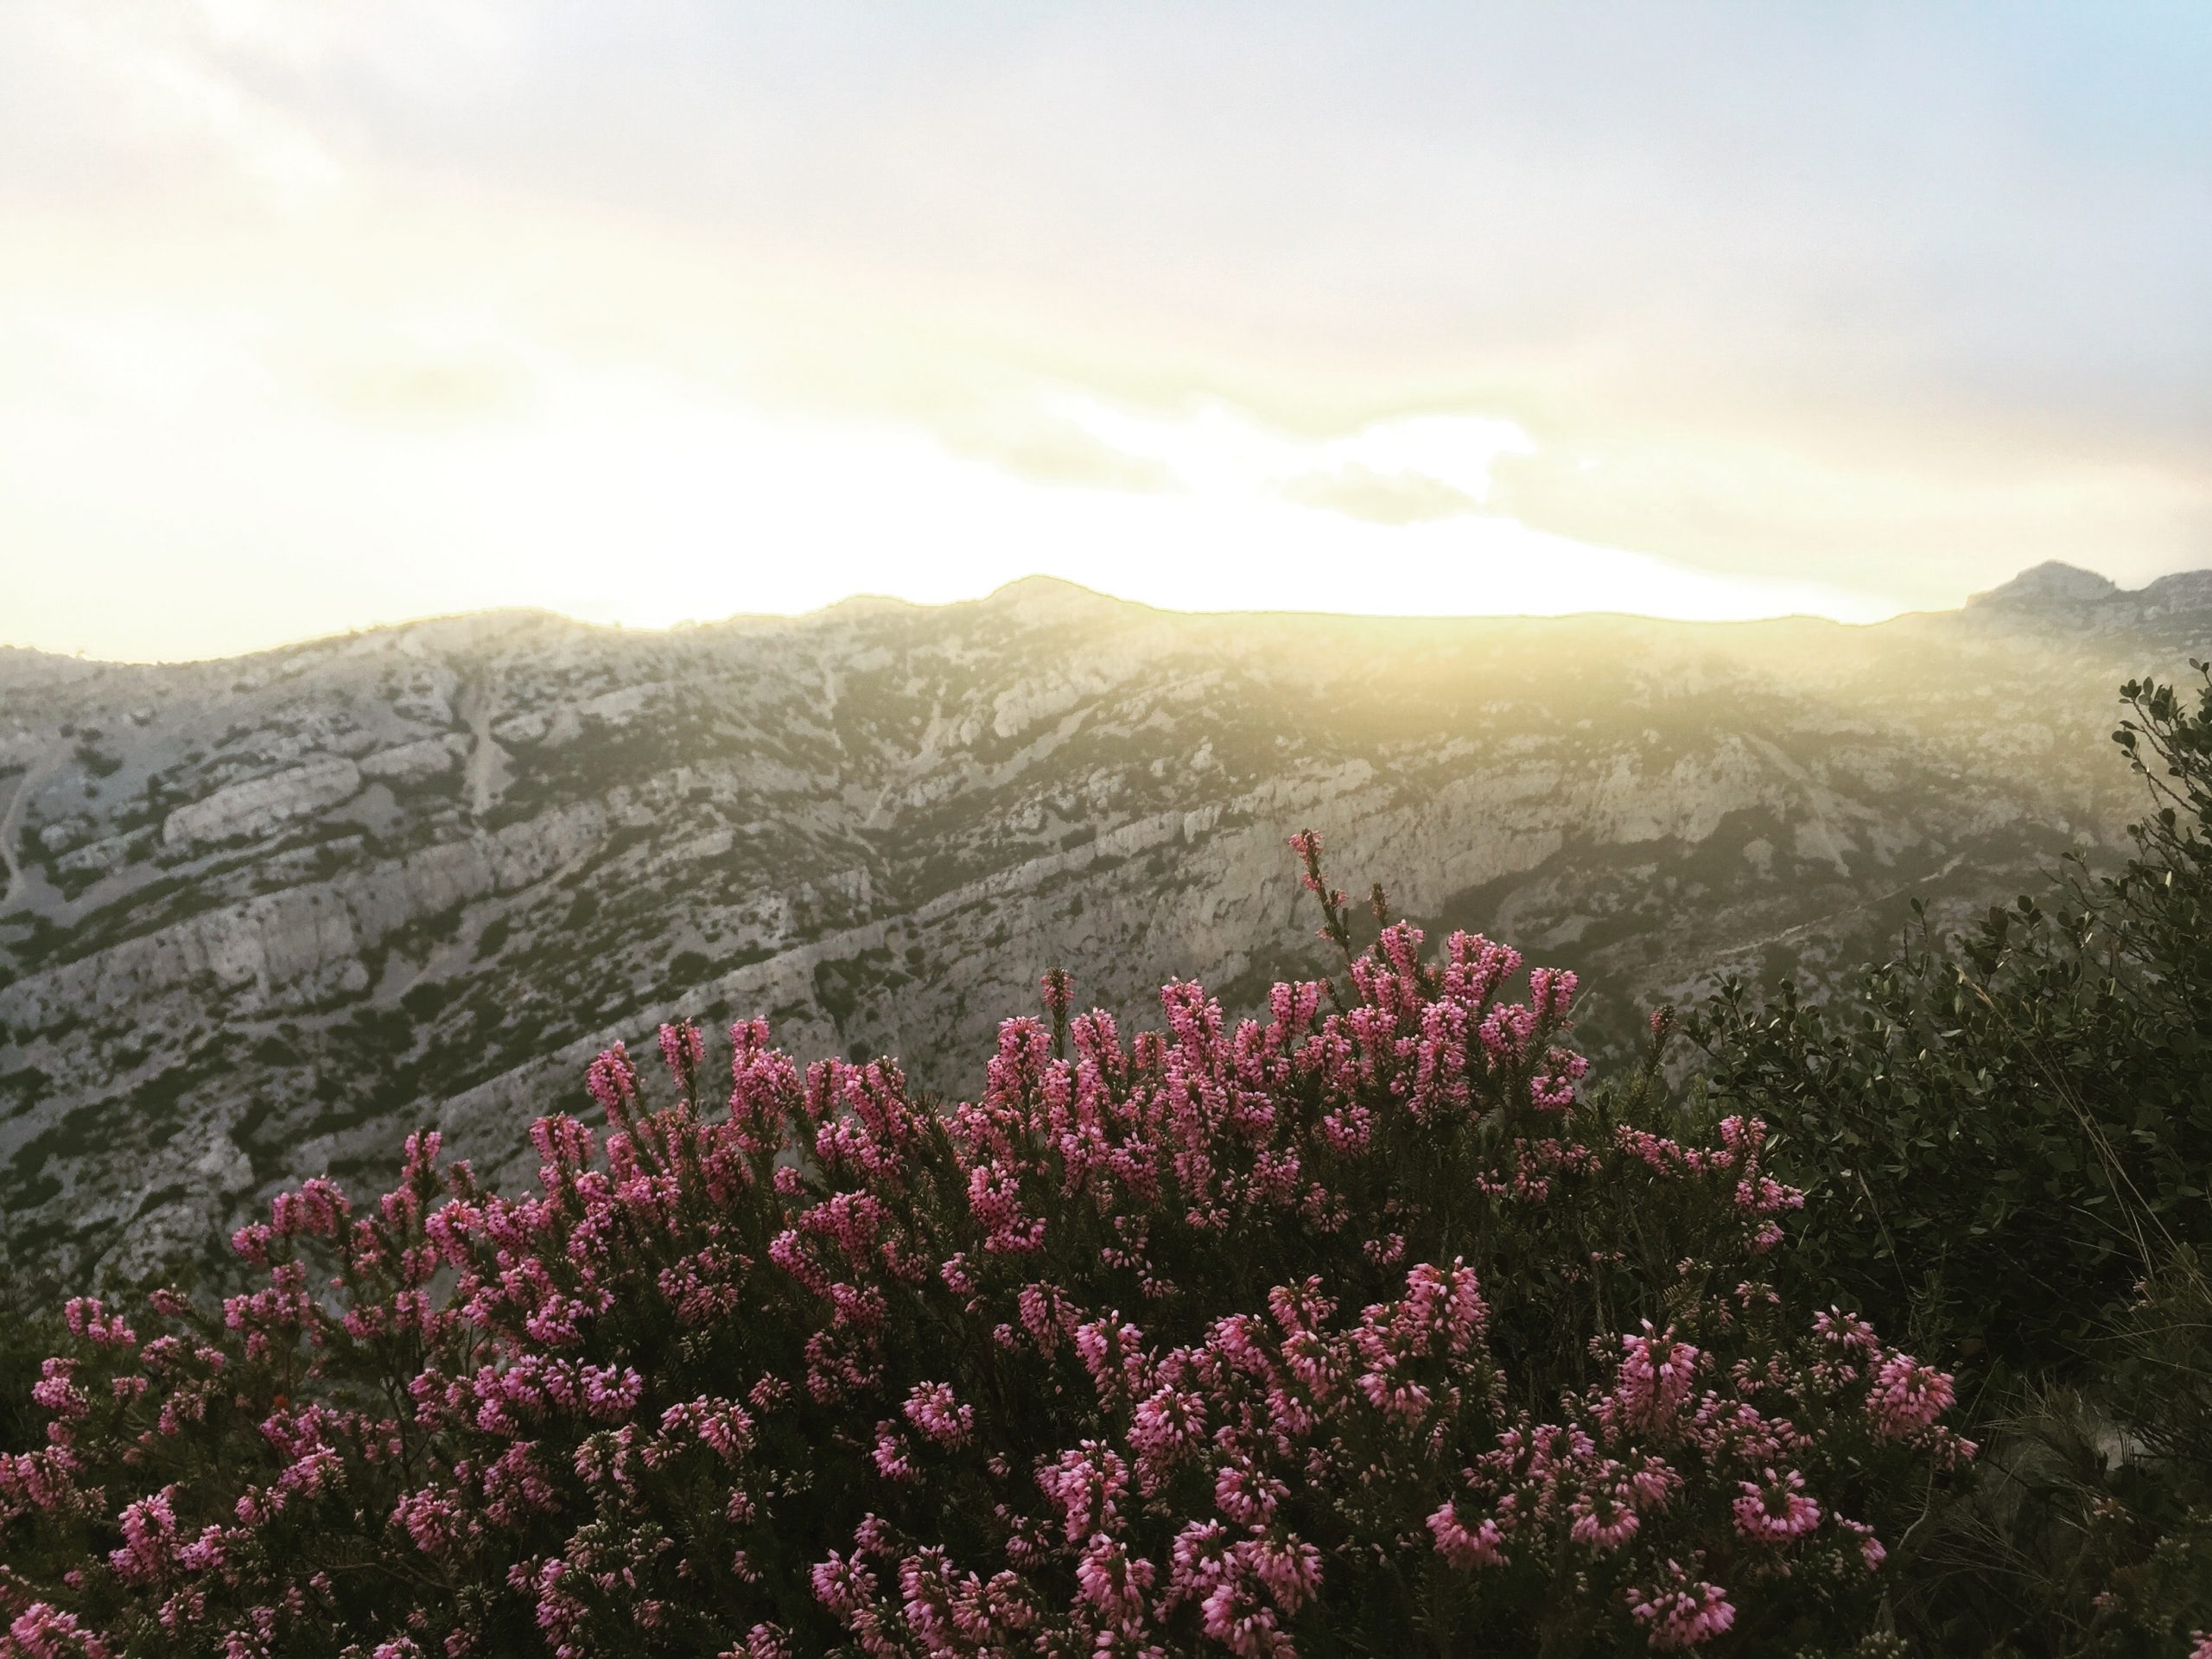 Une photographie d'un doux lever de soleil jaune au-dessus d'un flanc de montagne gris. Au pied de la montagne, un bouquet de fleurs sauvages d'un rose intense pousse. Le ciel est d'un bleu-rose pâle et est rempli de doux rayons de soleil.